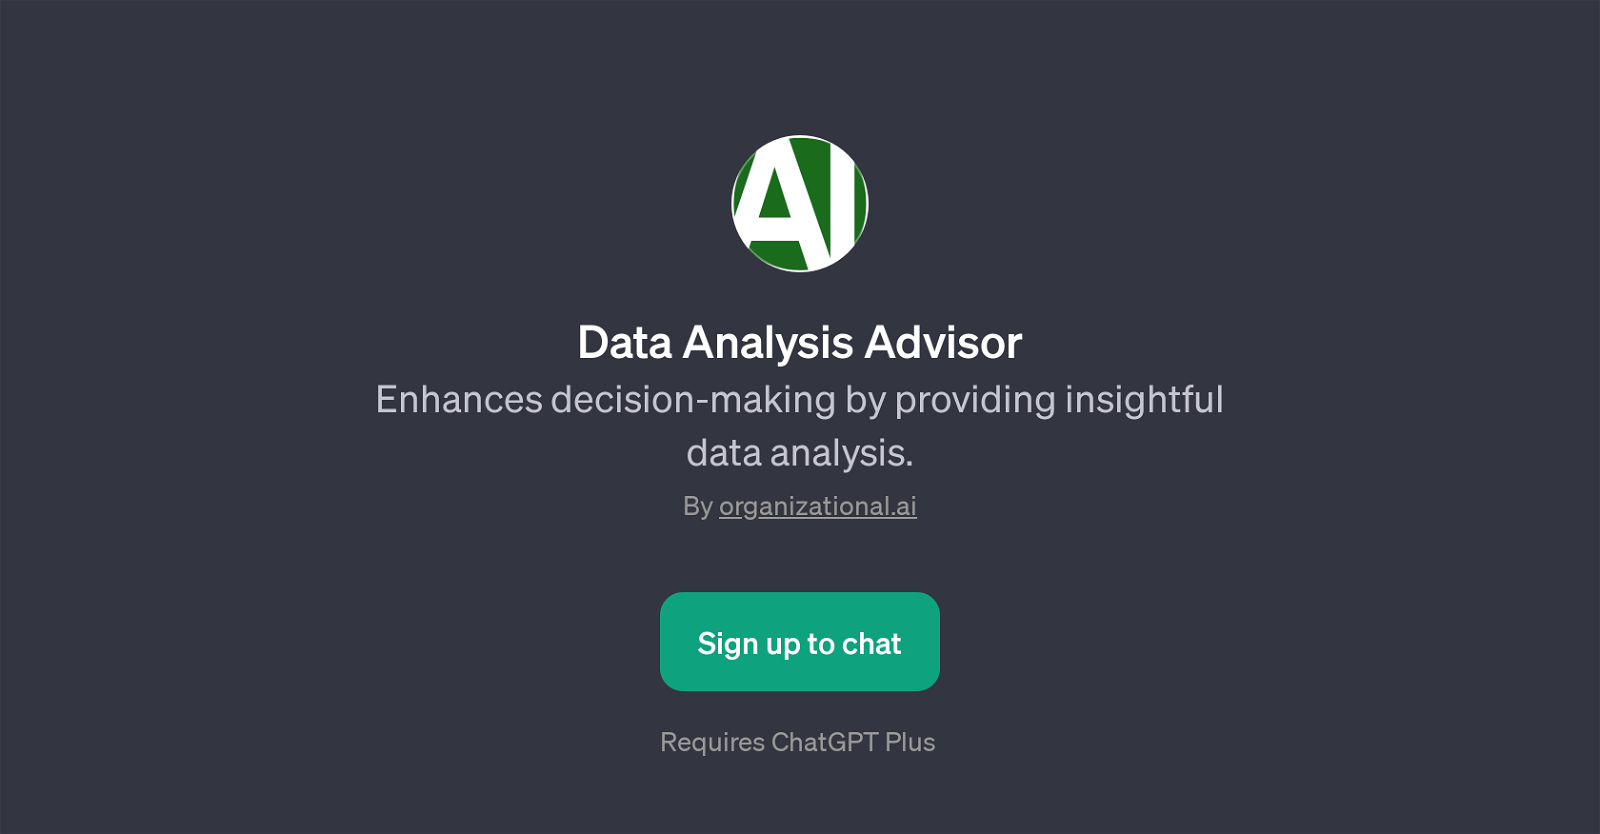 Data Analysis Advisor website